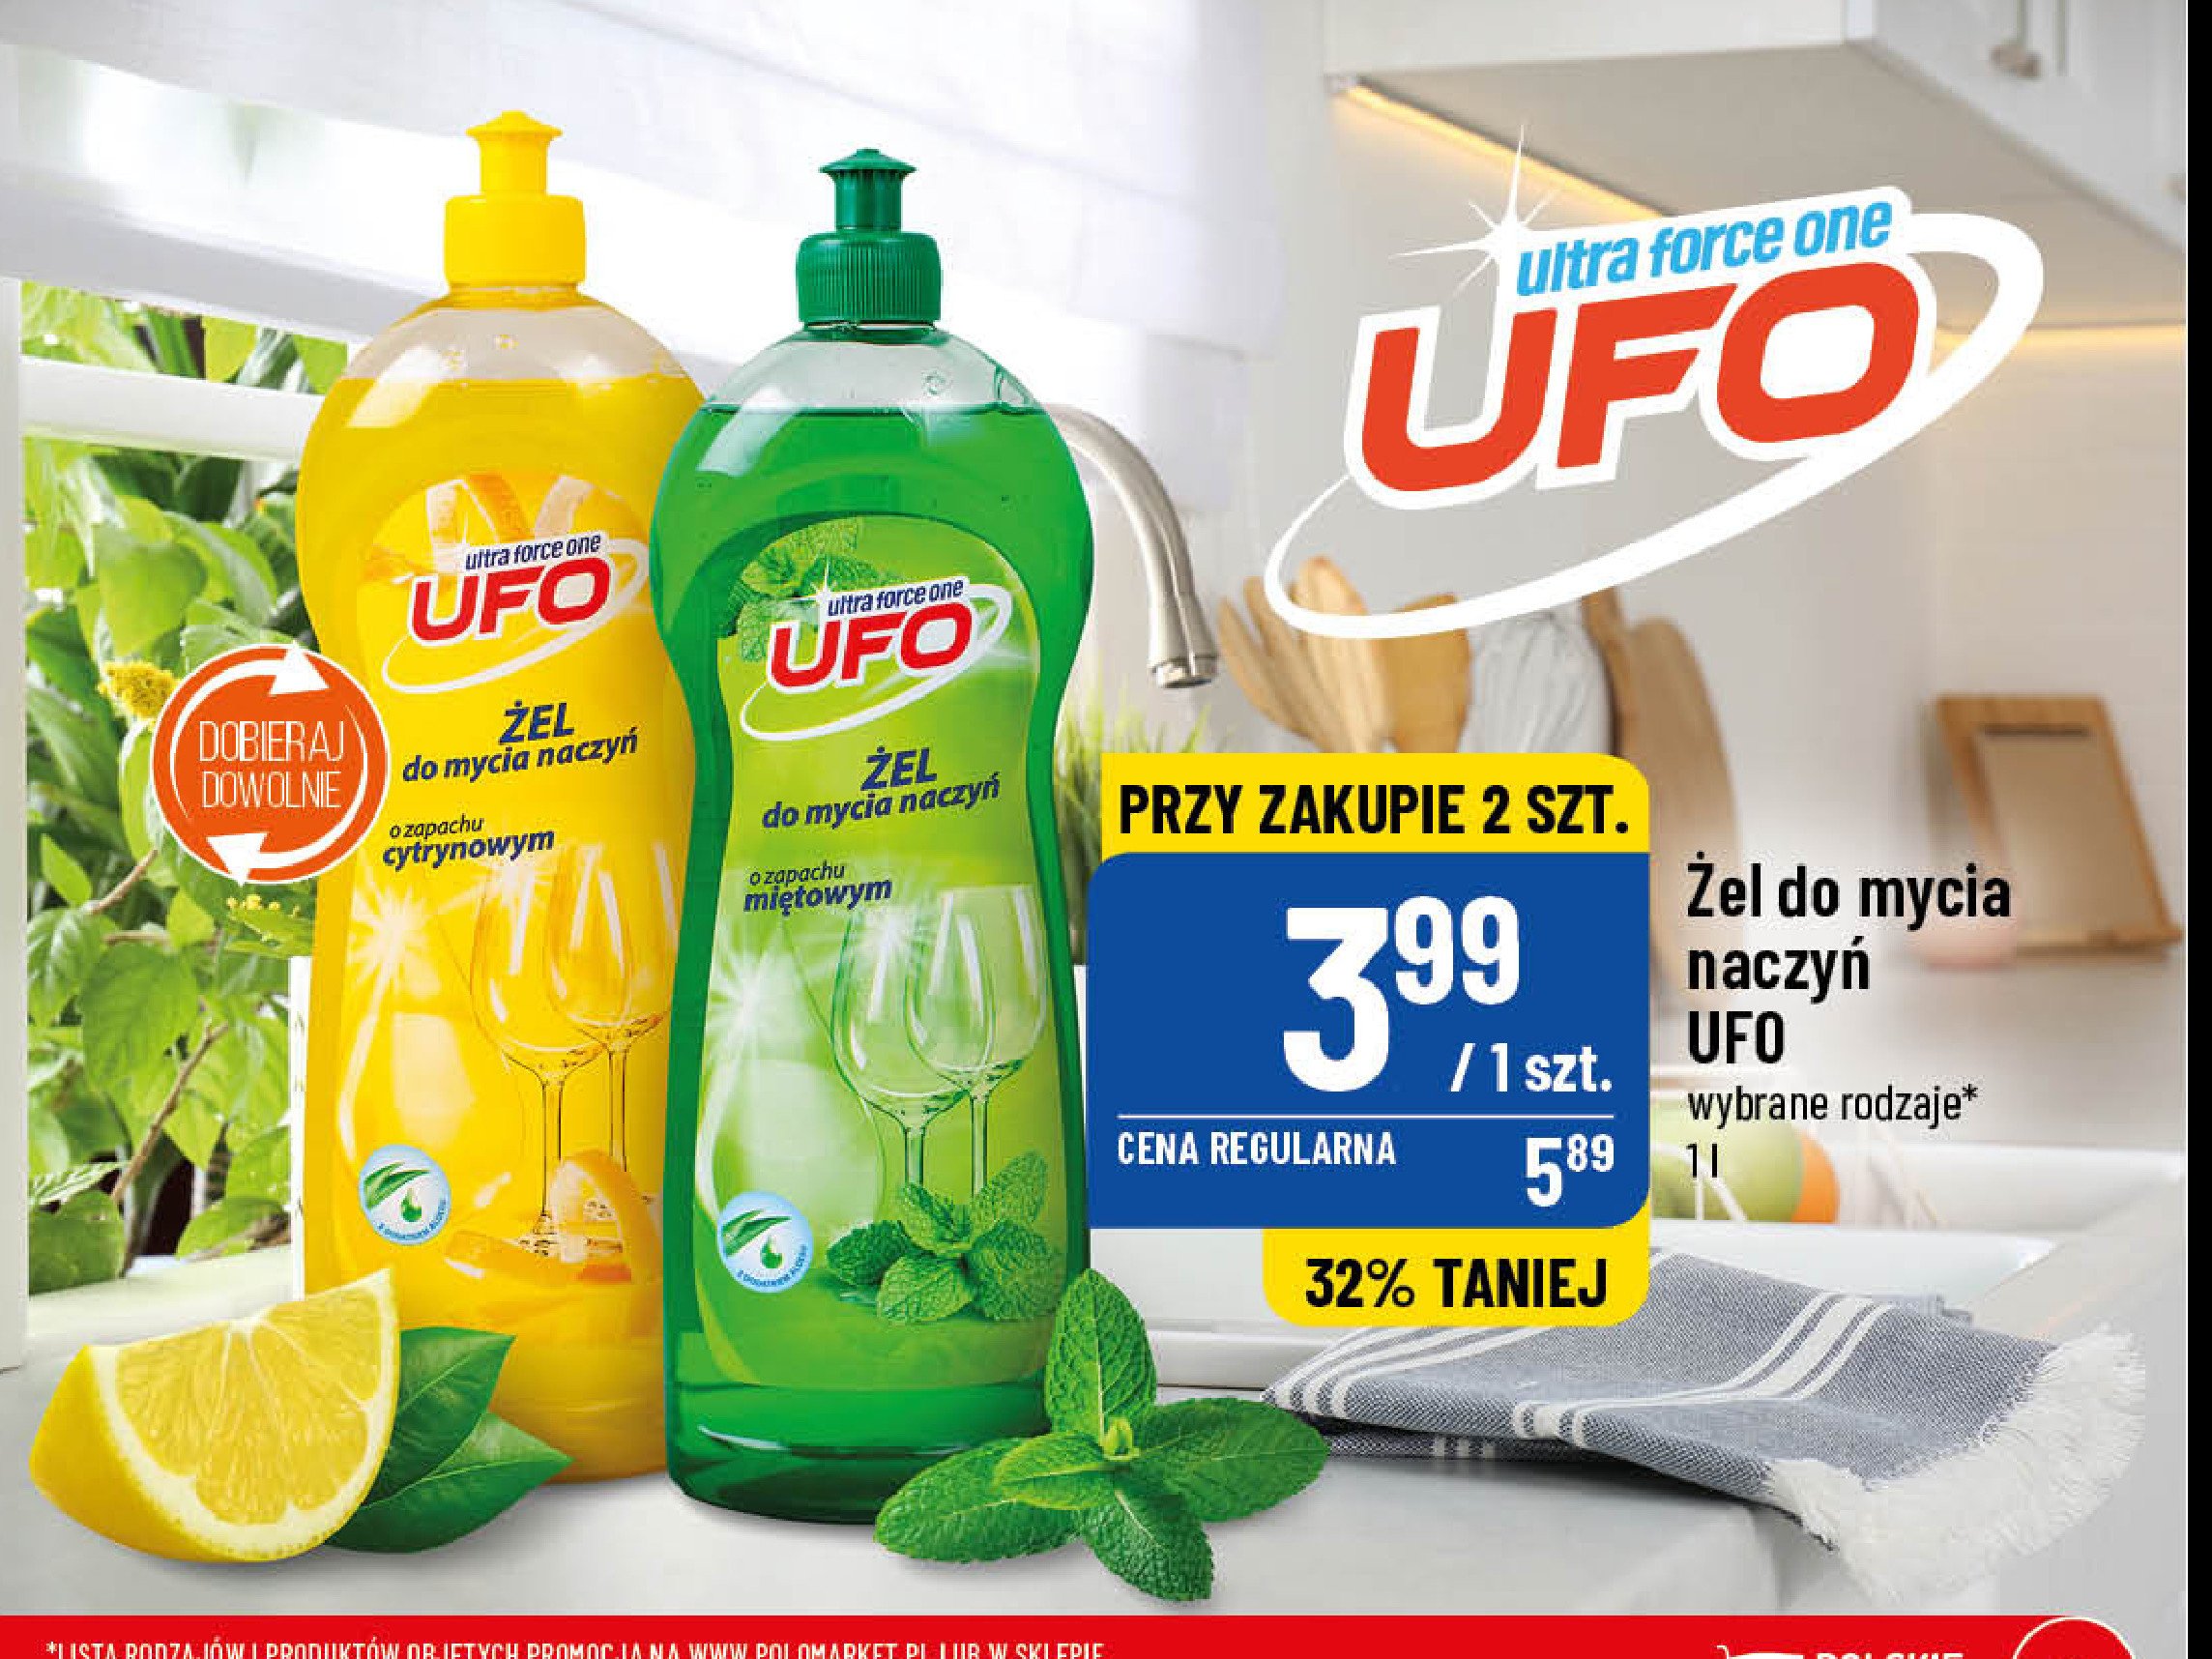 Żel do mycia naczyń cytrynowy Ufo promocja